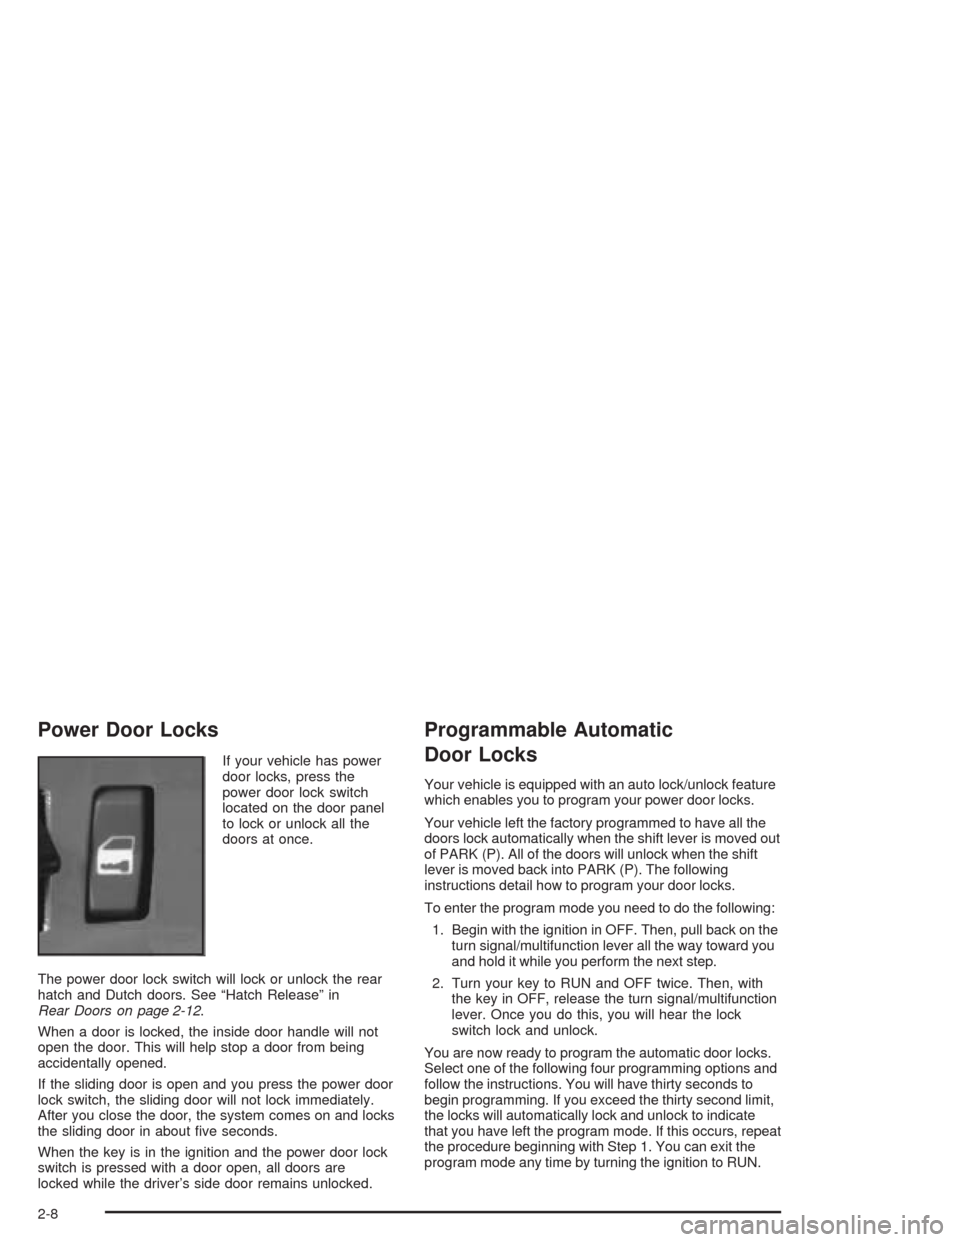 CHEVROLET ASTRO CARGO VAN 2004 2.G Manual Online Power Door Locks
If your vehicle has power
door locks, press the
power door lock switch
located on the door panel
to lock or unlock all the
doors at once.
The power door lock switch will lock or unloc